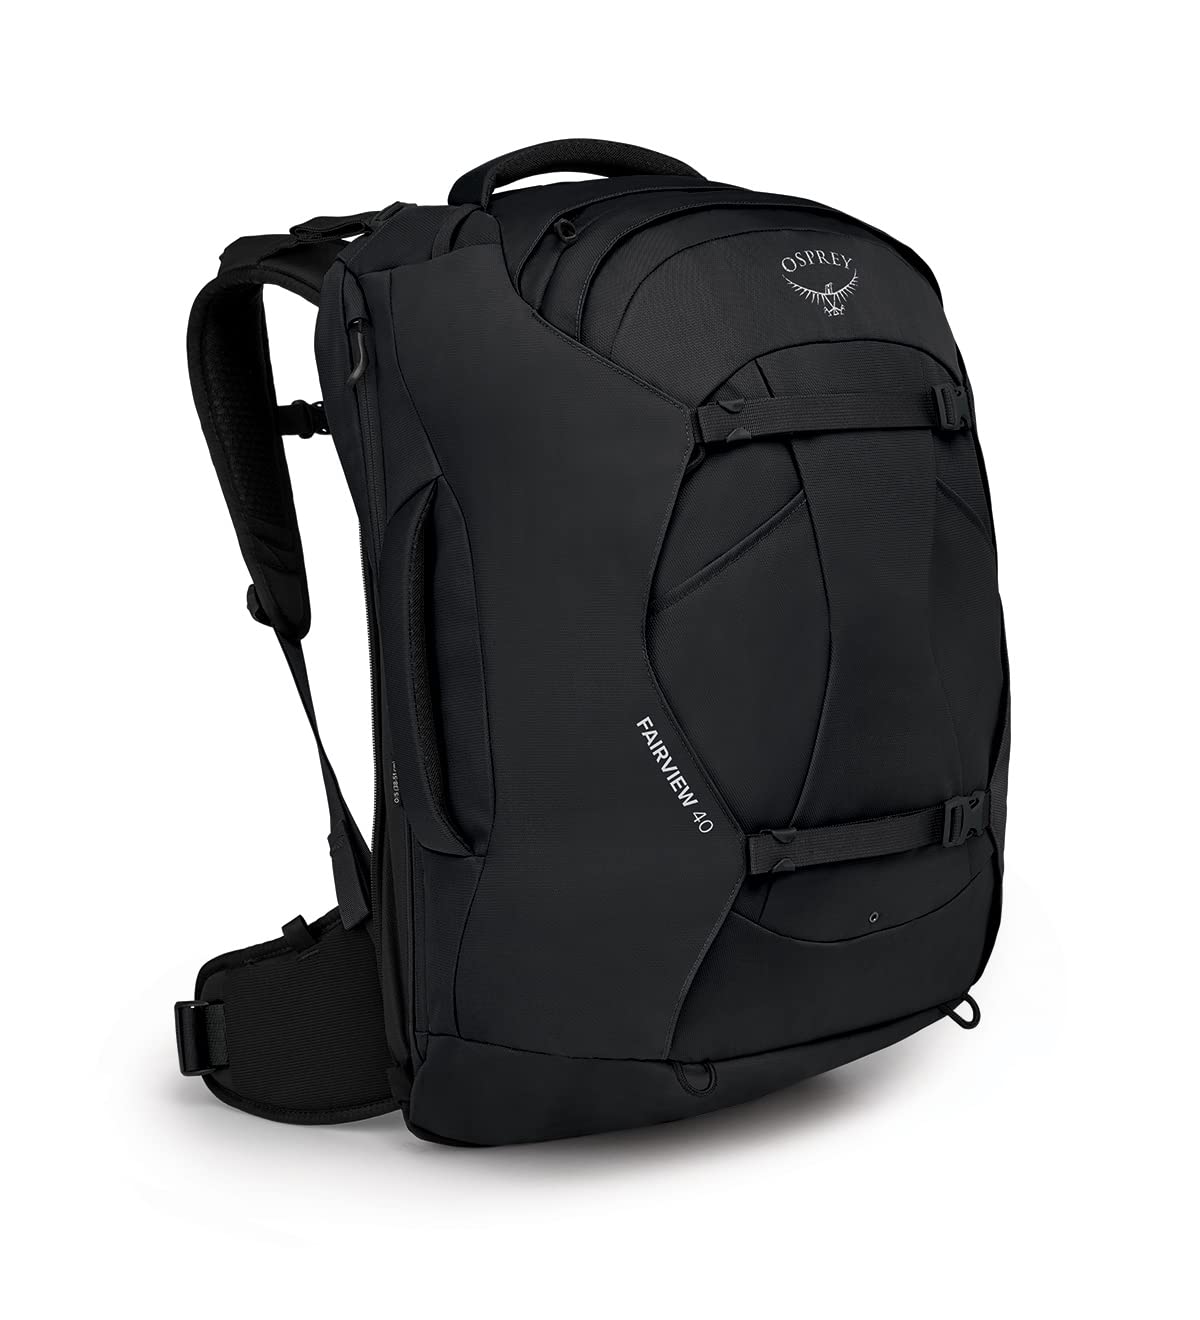 Osprey Fairview 40 Women's Travel Backpack, Black